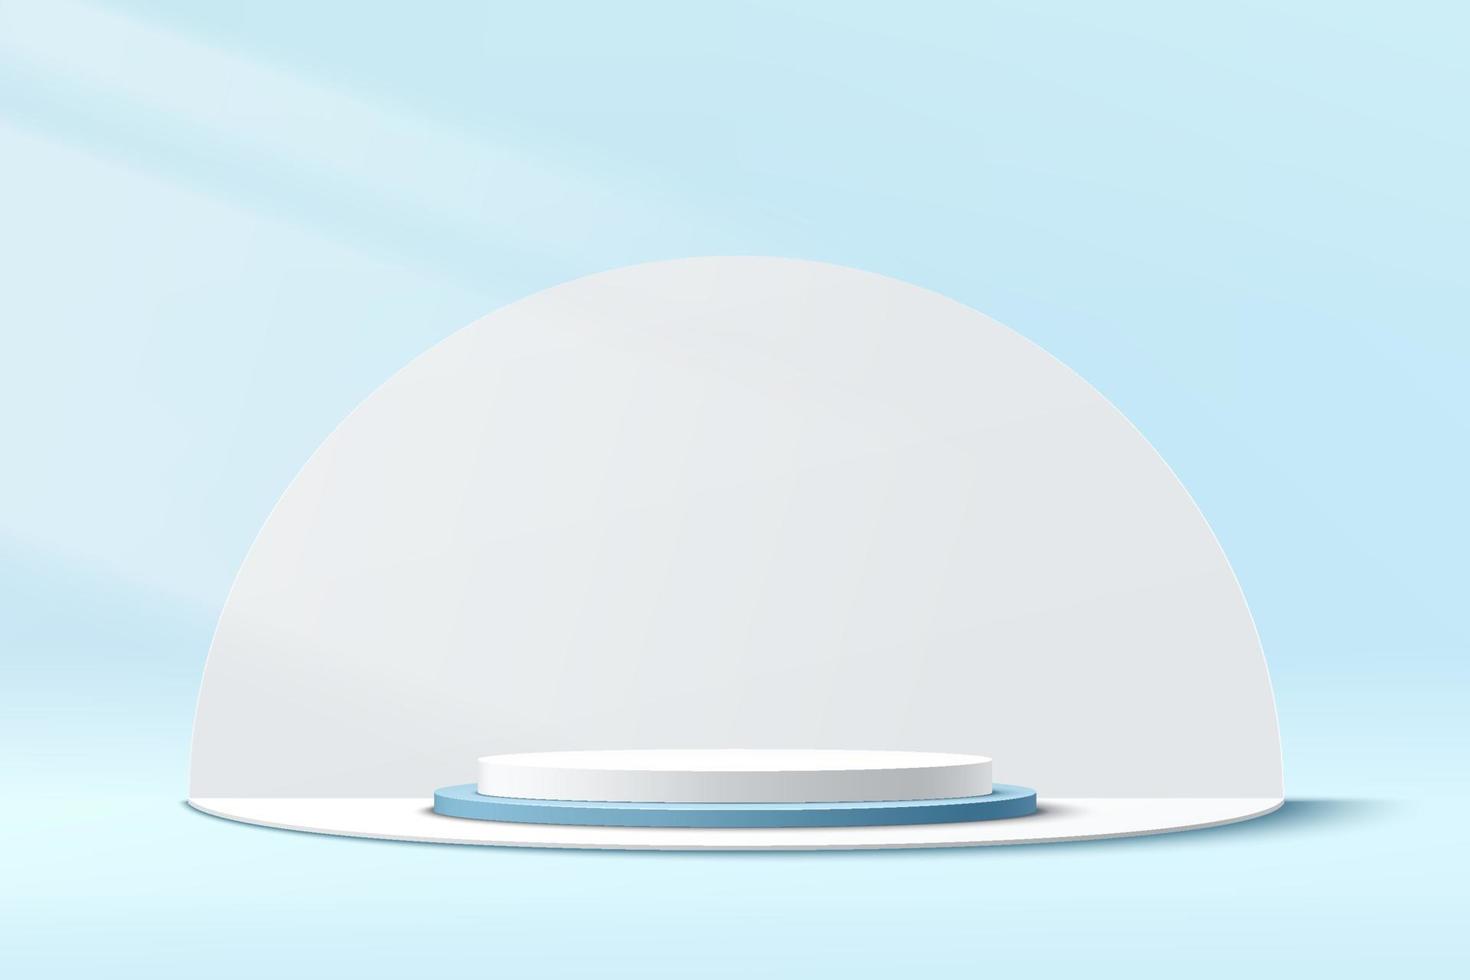 podium de piédestal de cylindre blanc et bleu abstrait 3d avec fond blanc en forme de demi-cercle. scène murale minimale bleu pastel pour la présentation de l'affichage du produit. conception de plate-forme géométrique de rendu vectoriel. vecteur